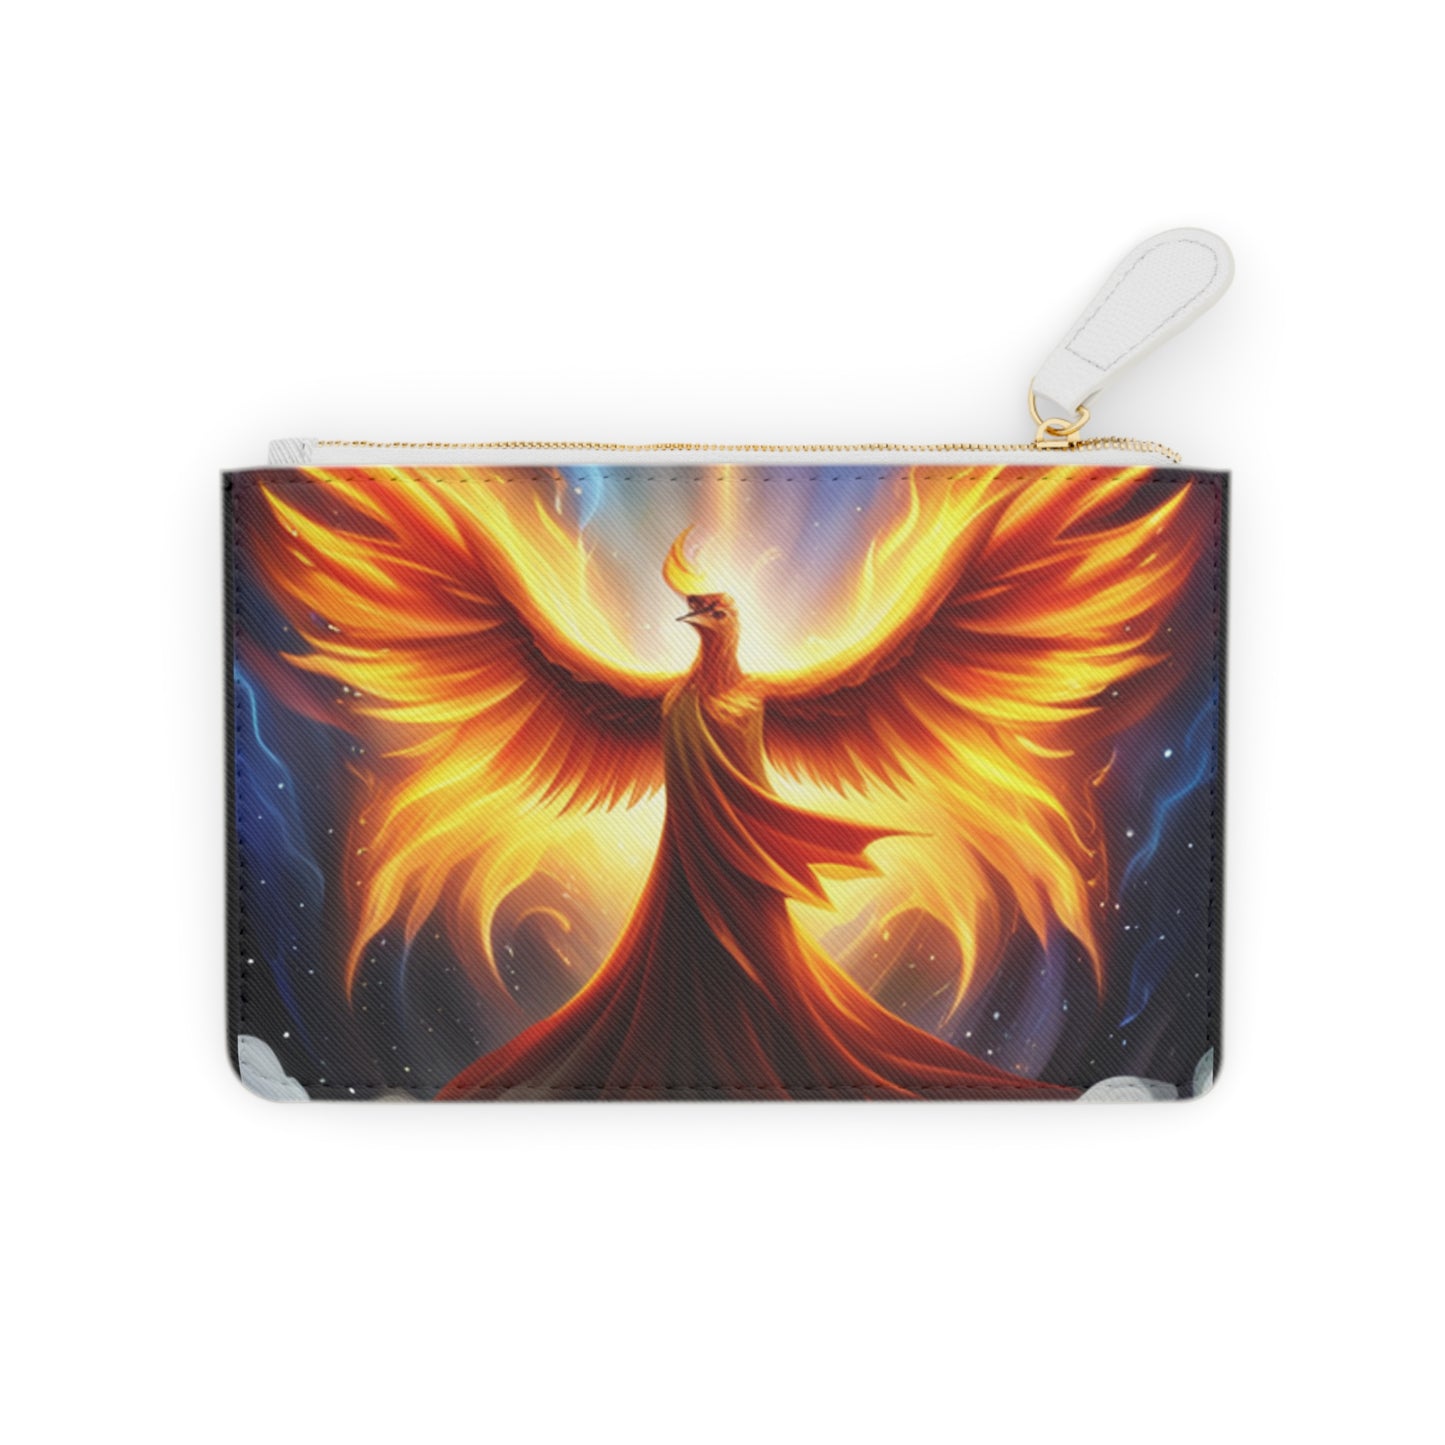 Phoenix Rising - Mini Clutch Bag